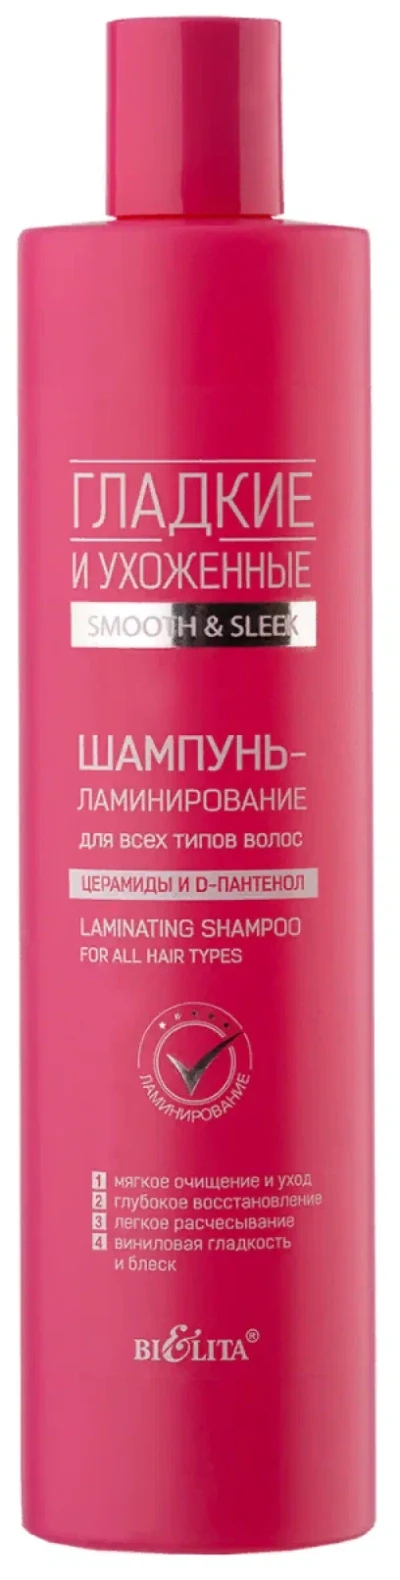 Шампунь-ламинирование для всех типов волос ГЛАДКИЕ и УХОЖЕННЫЕ 400мл